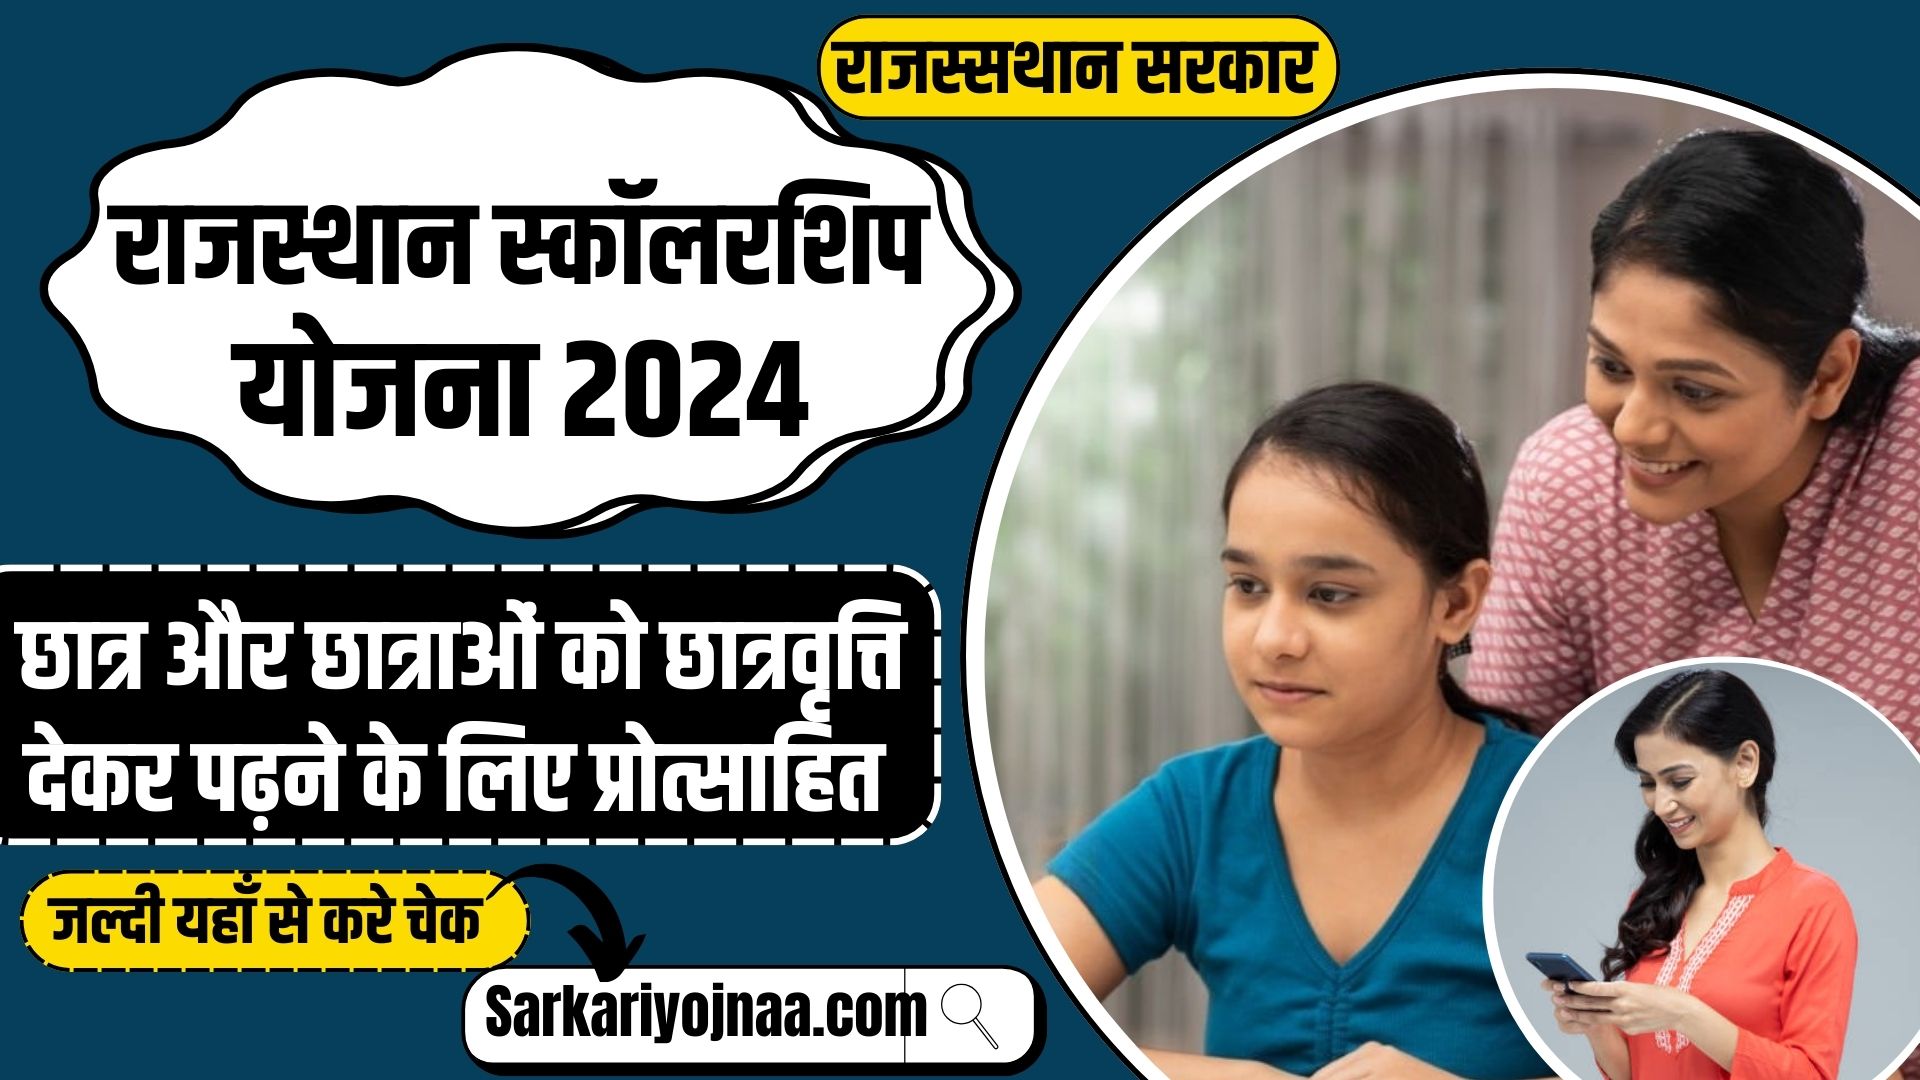 Rajasthan Scholarship Yojana 2024